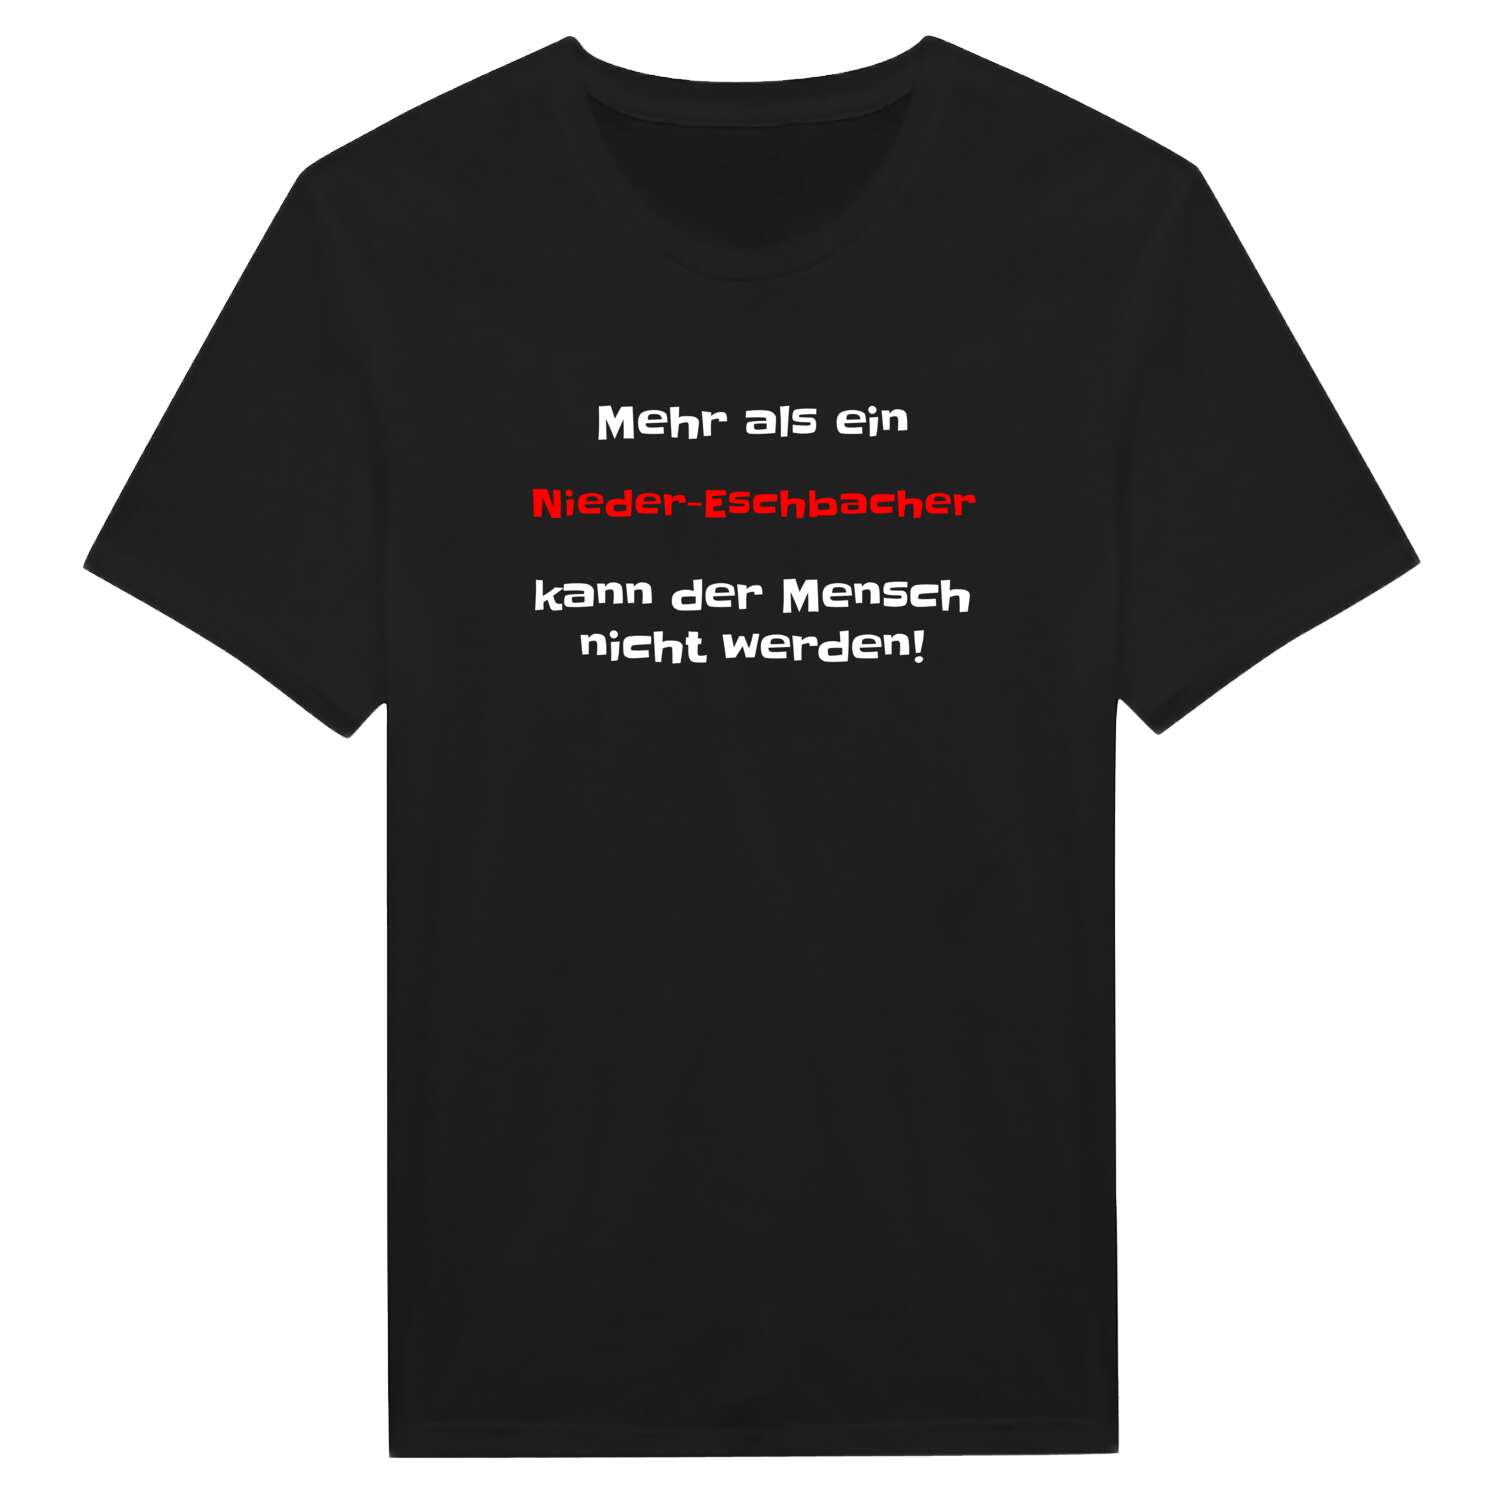 Nieder-Eschbach T-Shirt »Mehr als ein«